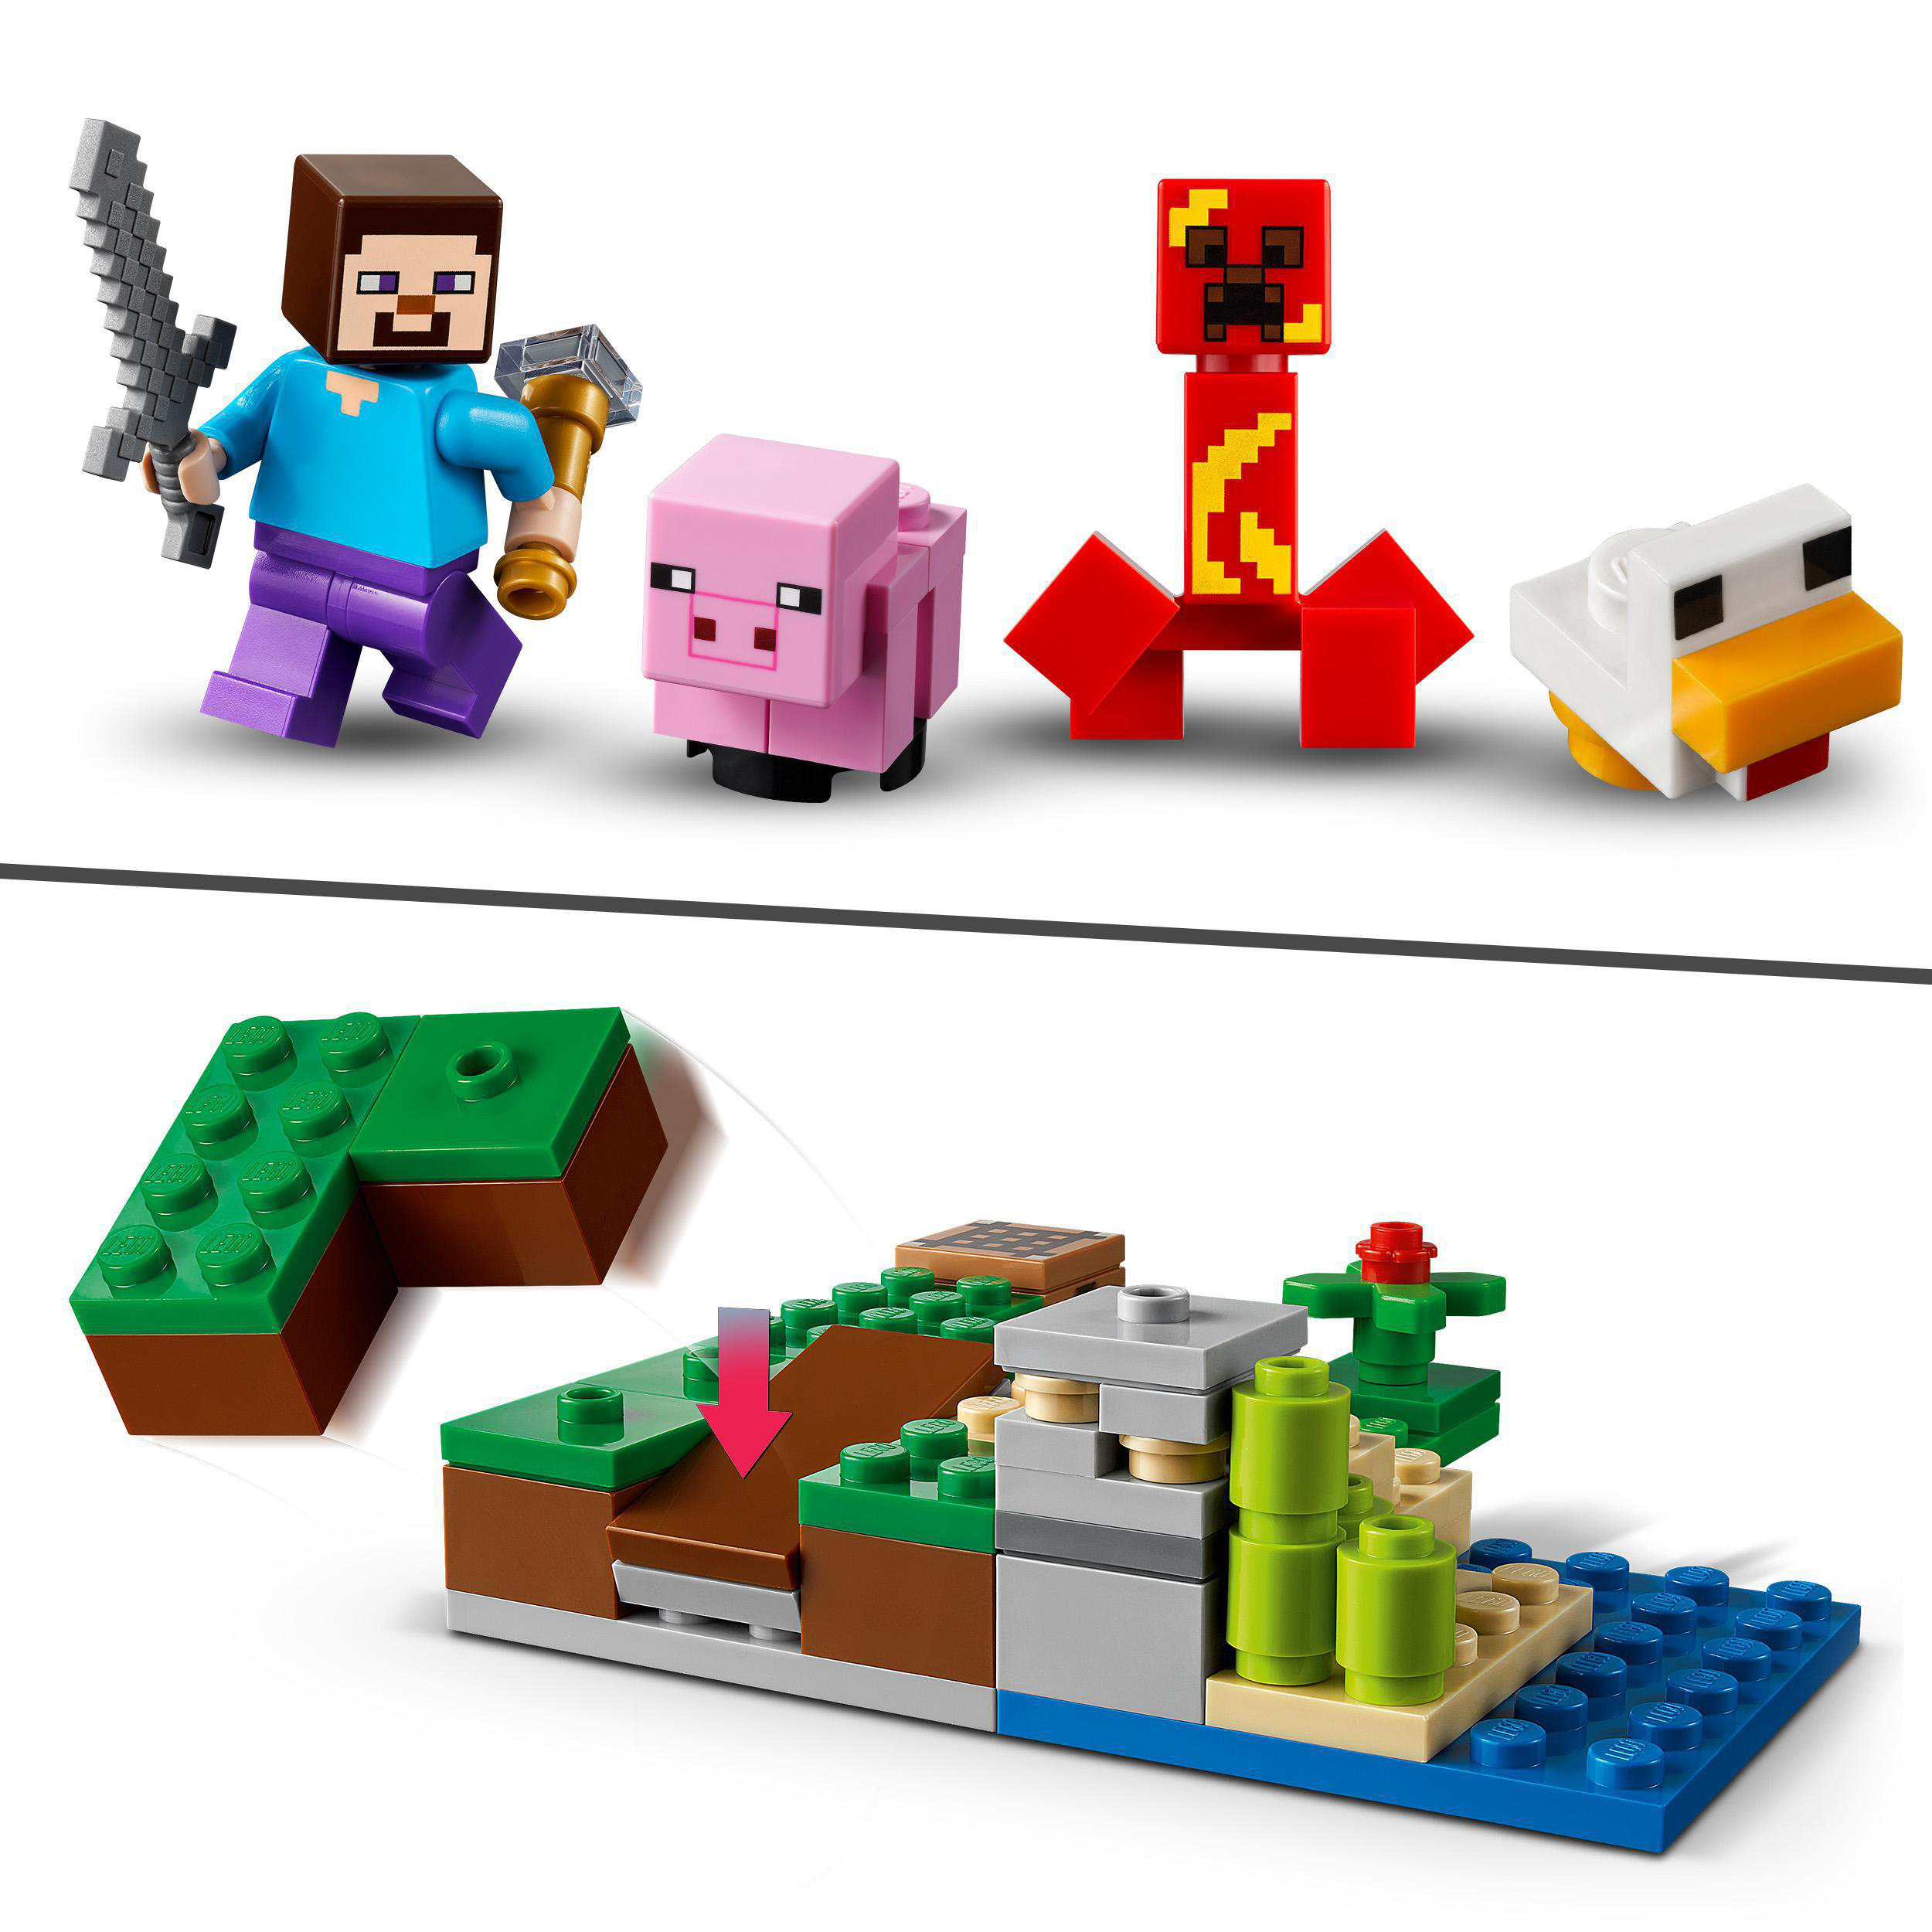 Der Creeper™ des Bausatz, Mehrfarbig Hinterhalt LEGO 21177 Minecraft